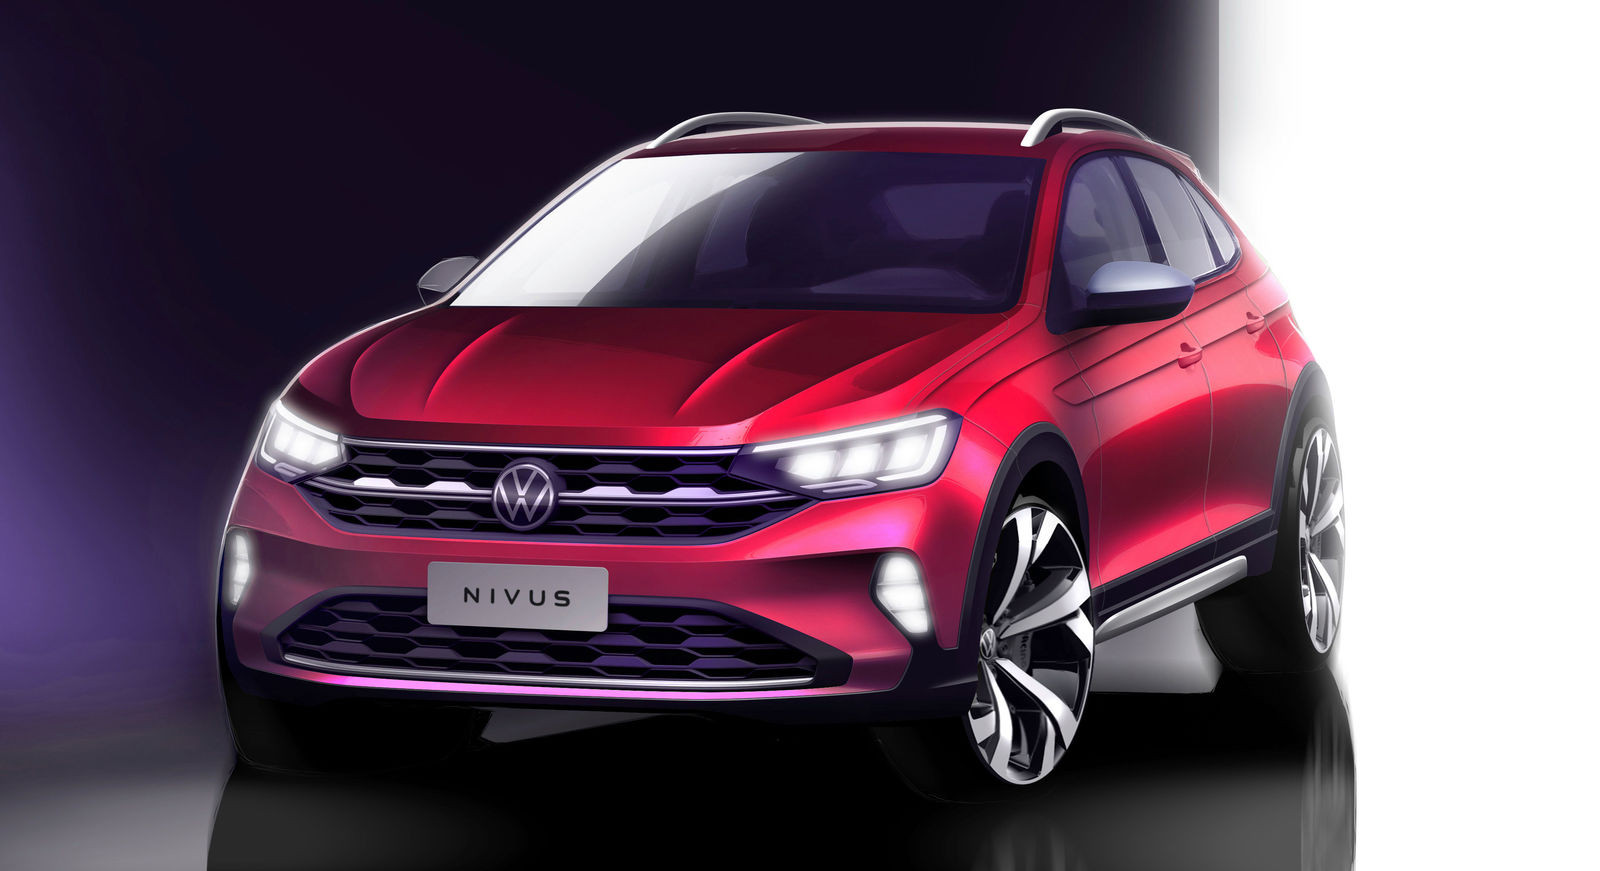 World premiere of the new Volkswagen Nivus